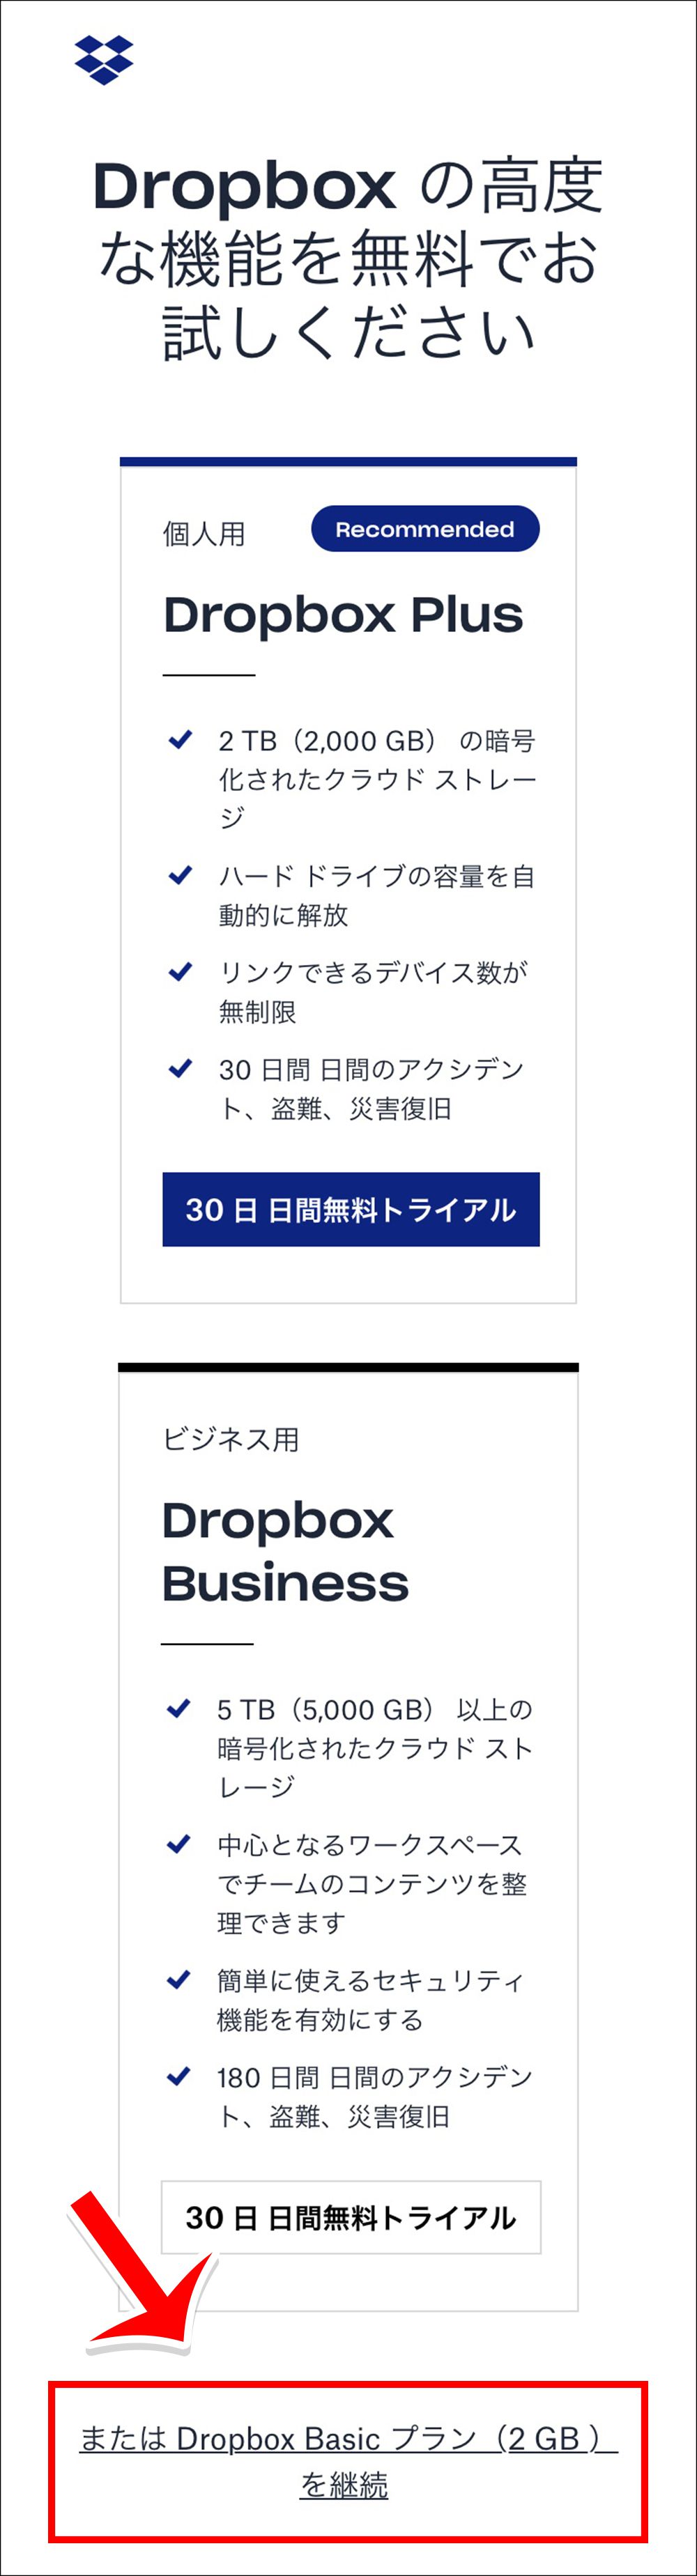 「DropBox Basicプラン(2GB)を継続」をタップ